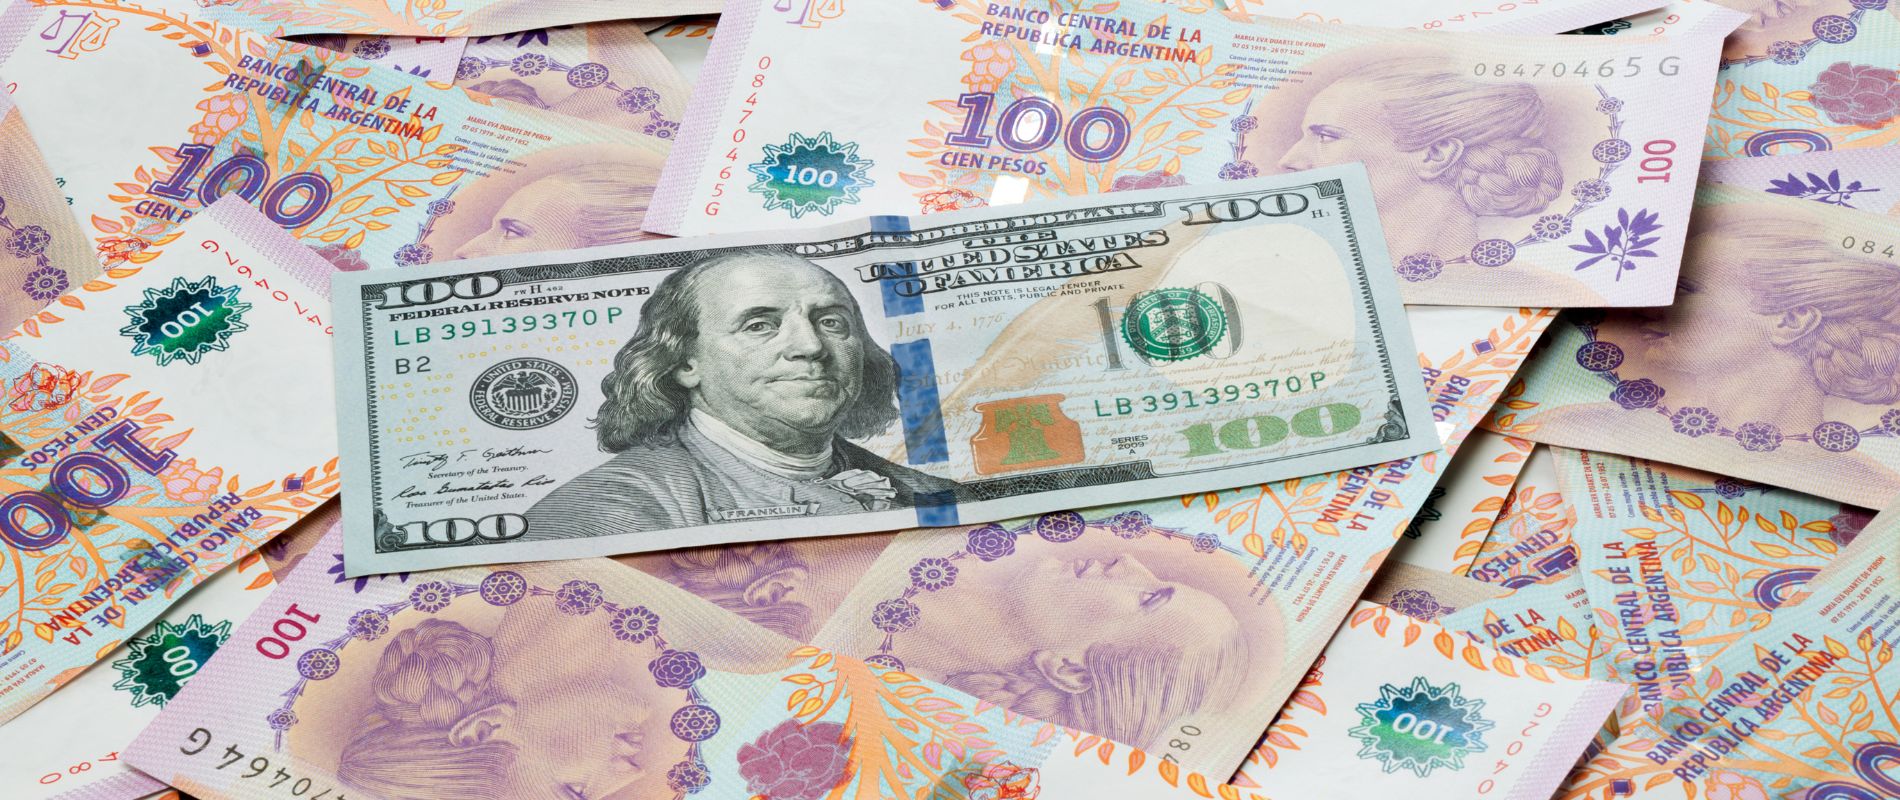 Más allá del dólar oficial en Argentina qué dicen las variables